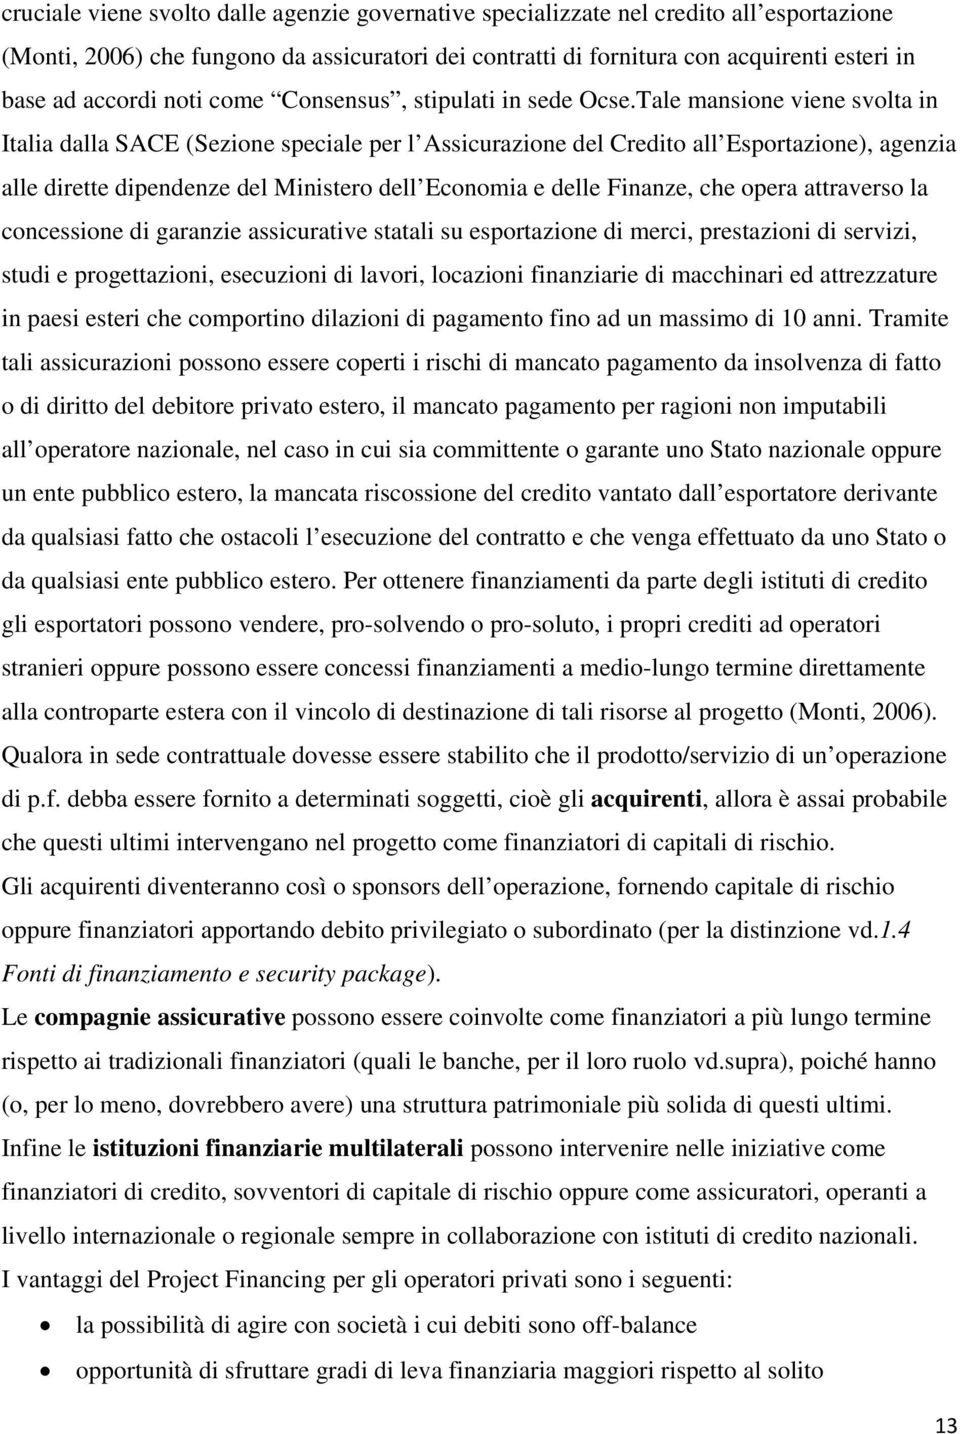 Tale mansione viene svolta in Italia dalla SACE (Sezione speciale per l Assicurazione del Credito all Esportazione), agenzia alle dirette dipendenze del Ministero dell Economia e delle Finanze, che